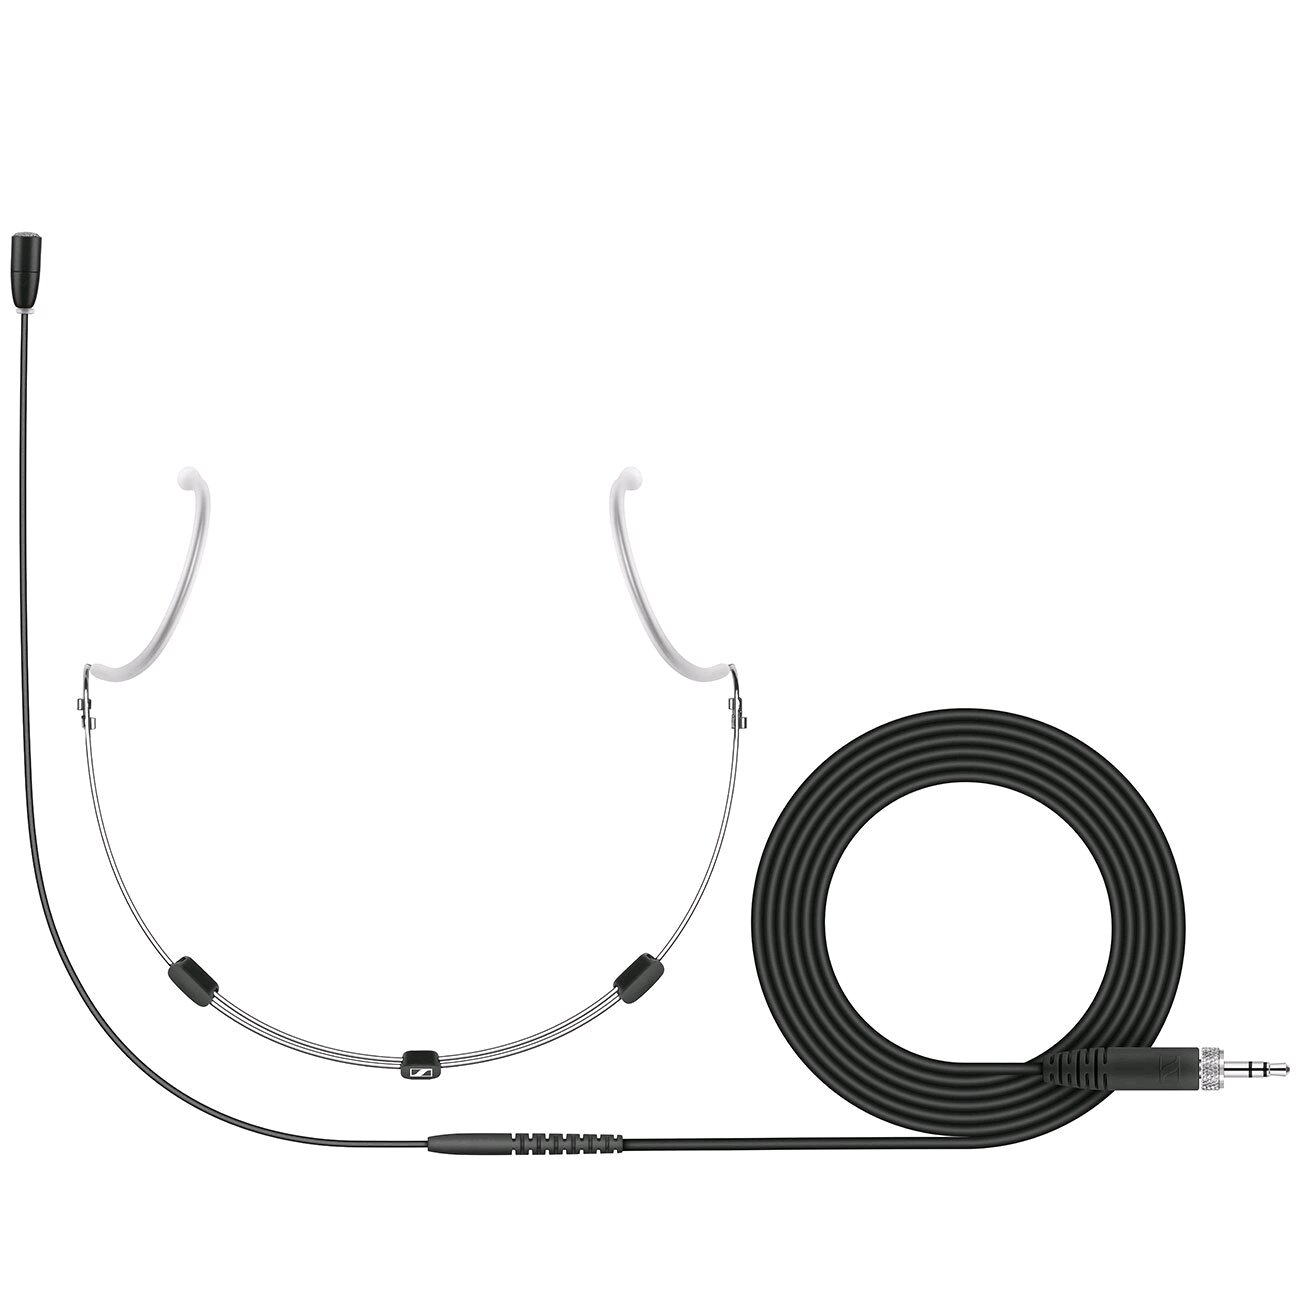 Sennheiser HSP ESSENTIAL OMNI-BLACK Headsetmikrofon (omnidirektionaler, vorpolarisierter Kondensator), mit 1,6m Kabel für XS und evolution wireless Systeme, schwarz. Enthält (1) Omni-black HSP Essential mit 3,5-mm-Klinke, (1) SL MZW 1 Schaumstoff-Windschutz und (1) Softcase_x000D_ : photo 1